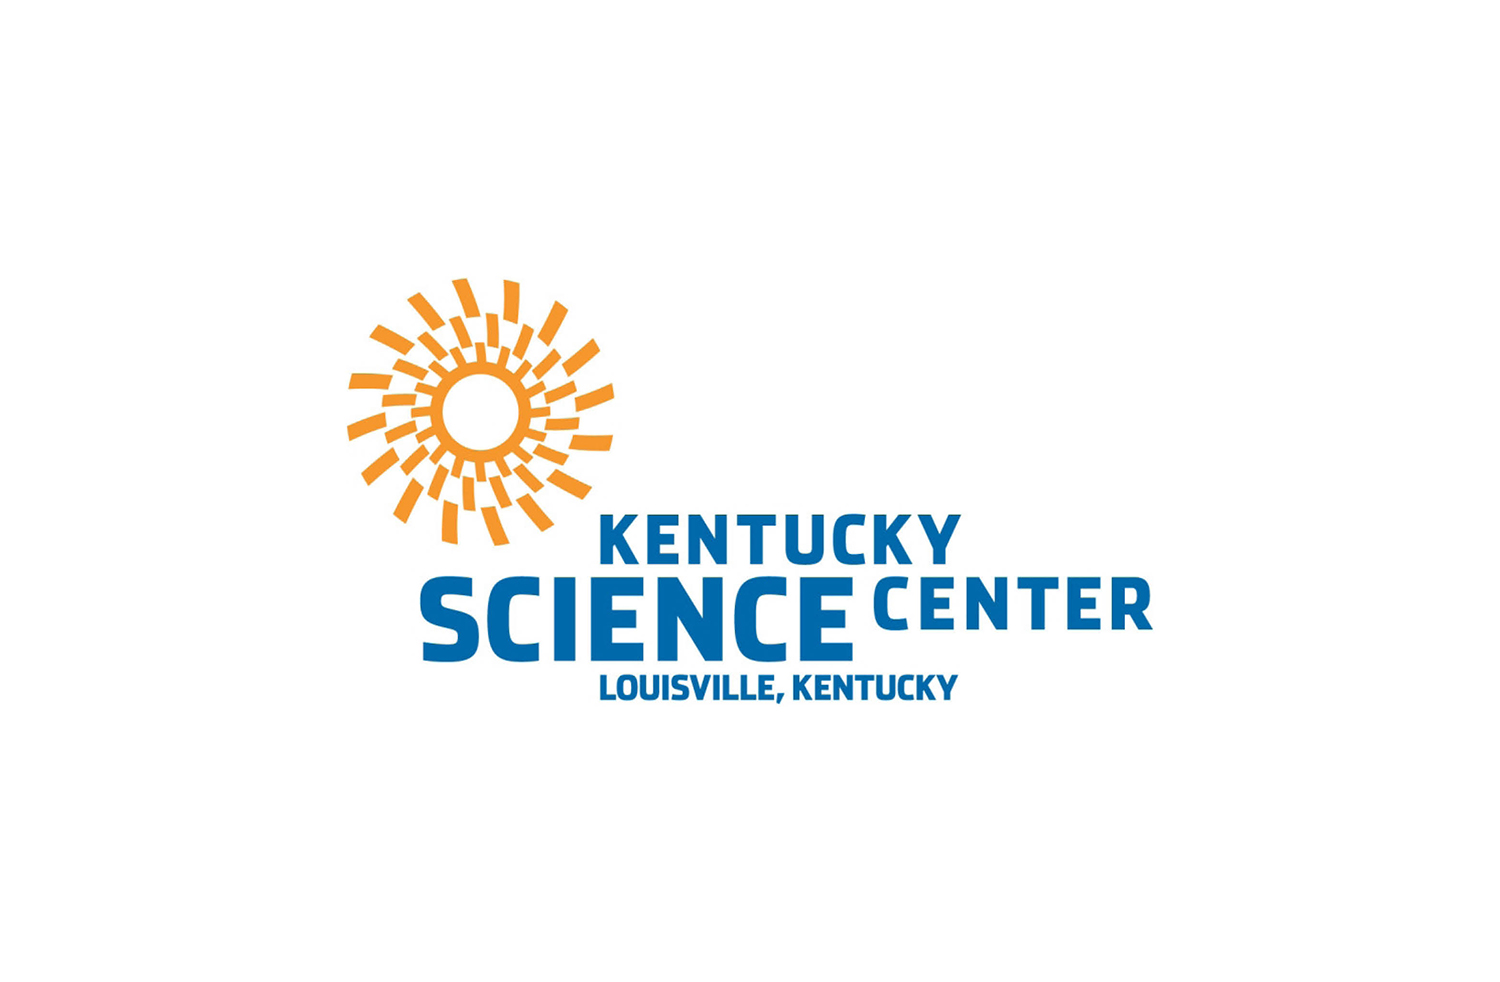 Boss_Display_Client_Kentucky_Science_Center_Logo.jpg